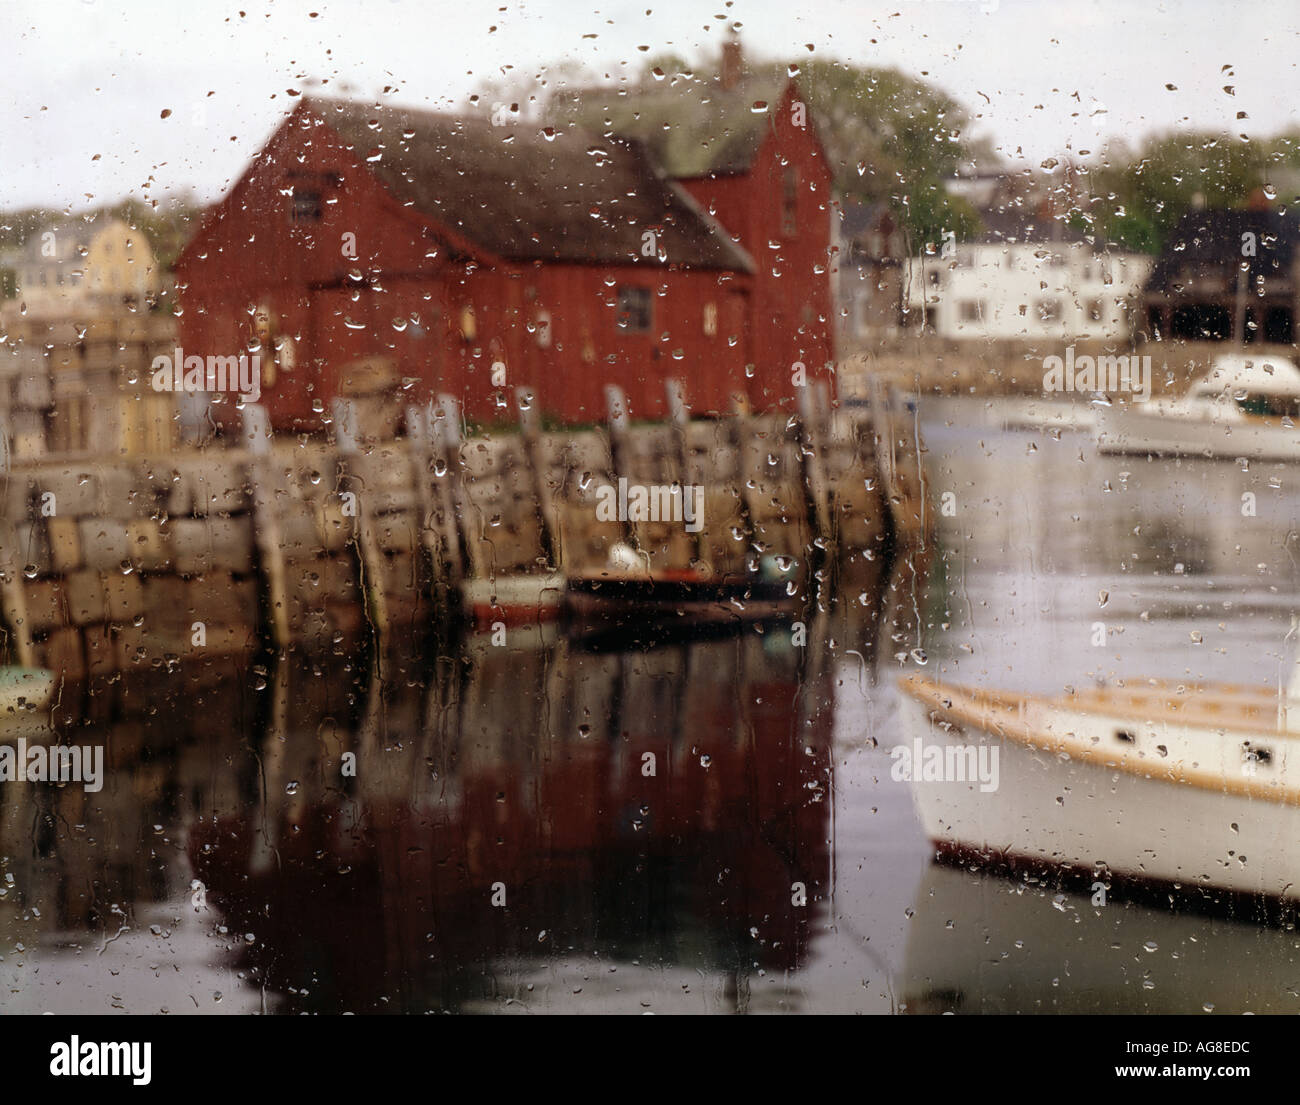 Angeln-Schuppen bekannt als Motiv 1 in Dorf von Rockport Massachusetts USA Stockfoto